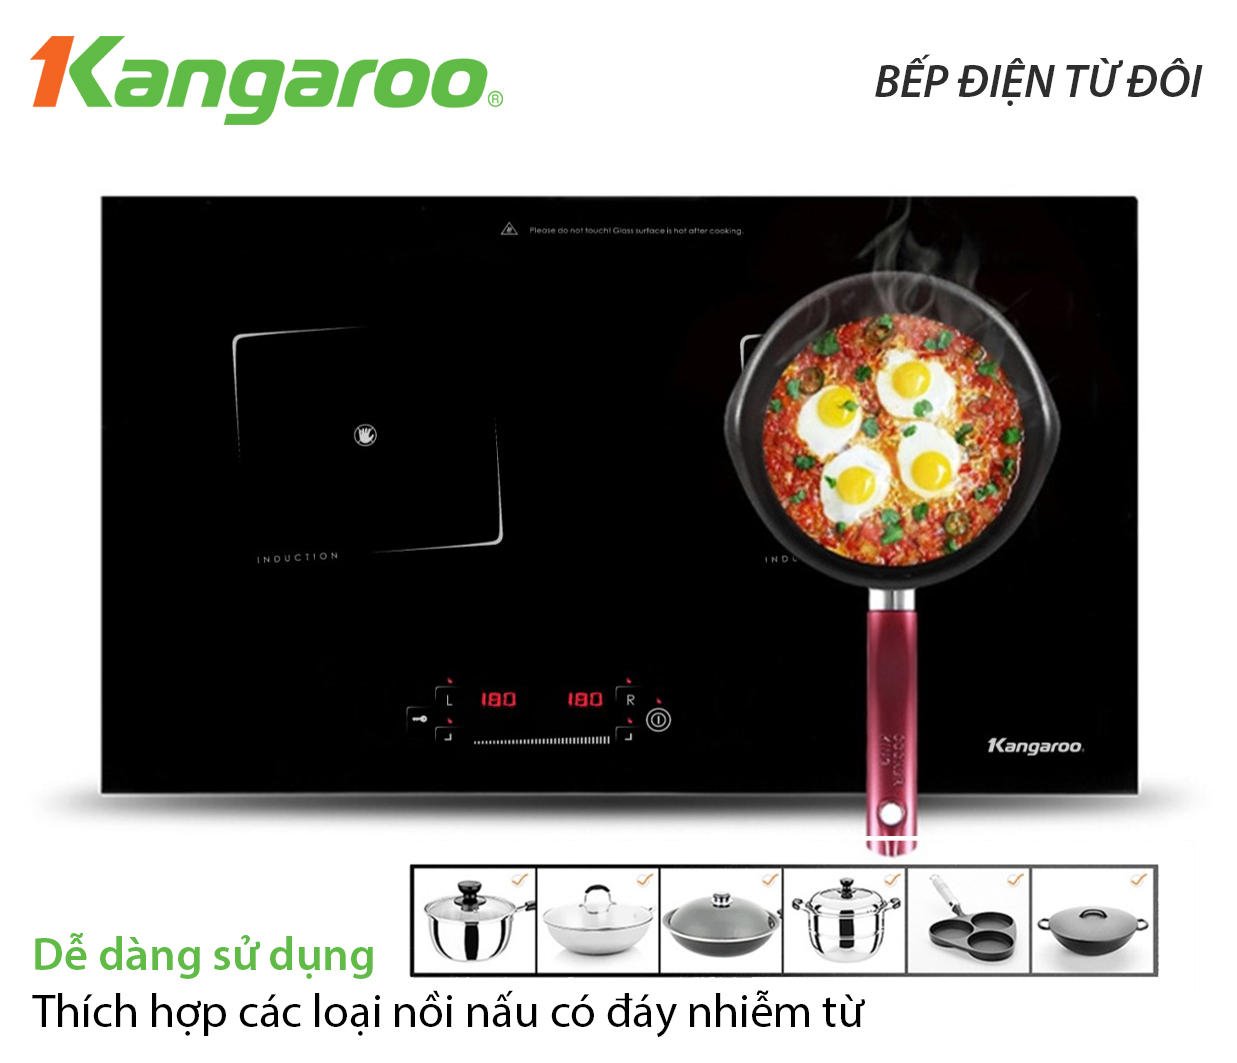 Bếp điện từ đôi Kangaroo KG435i thiết kế linh hoạt